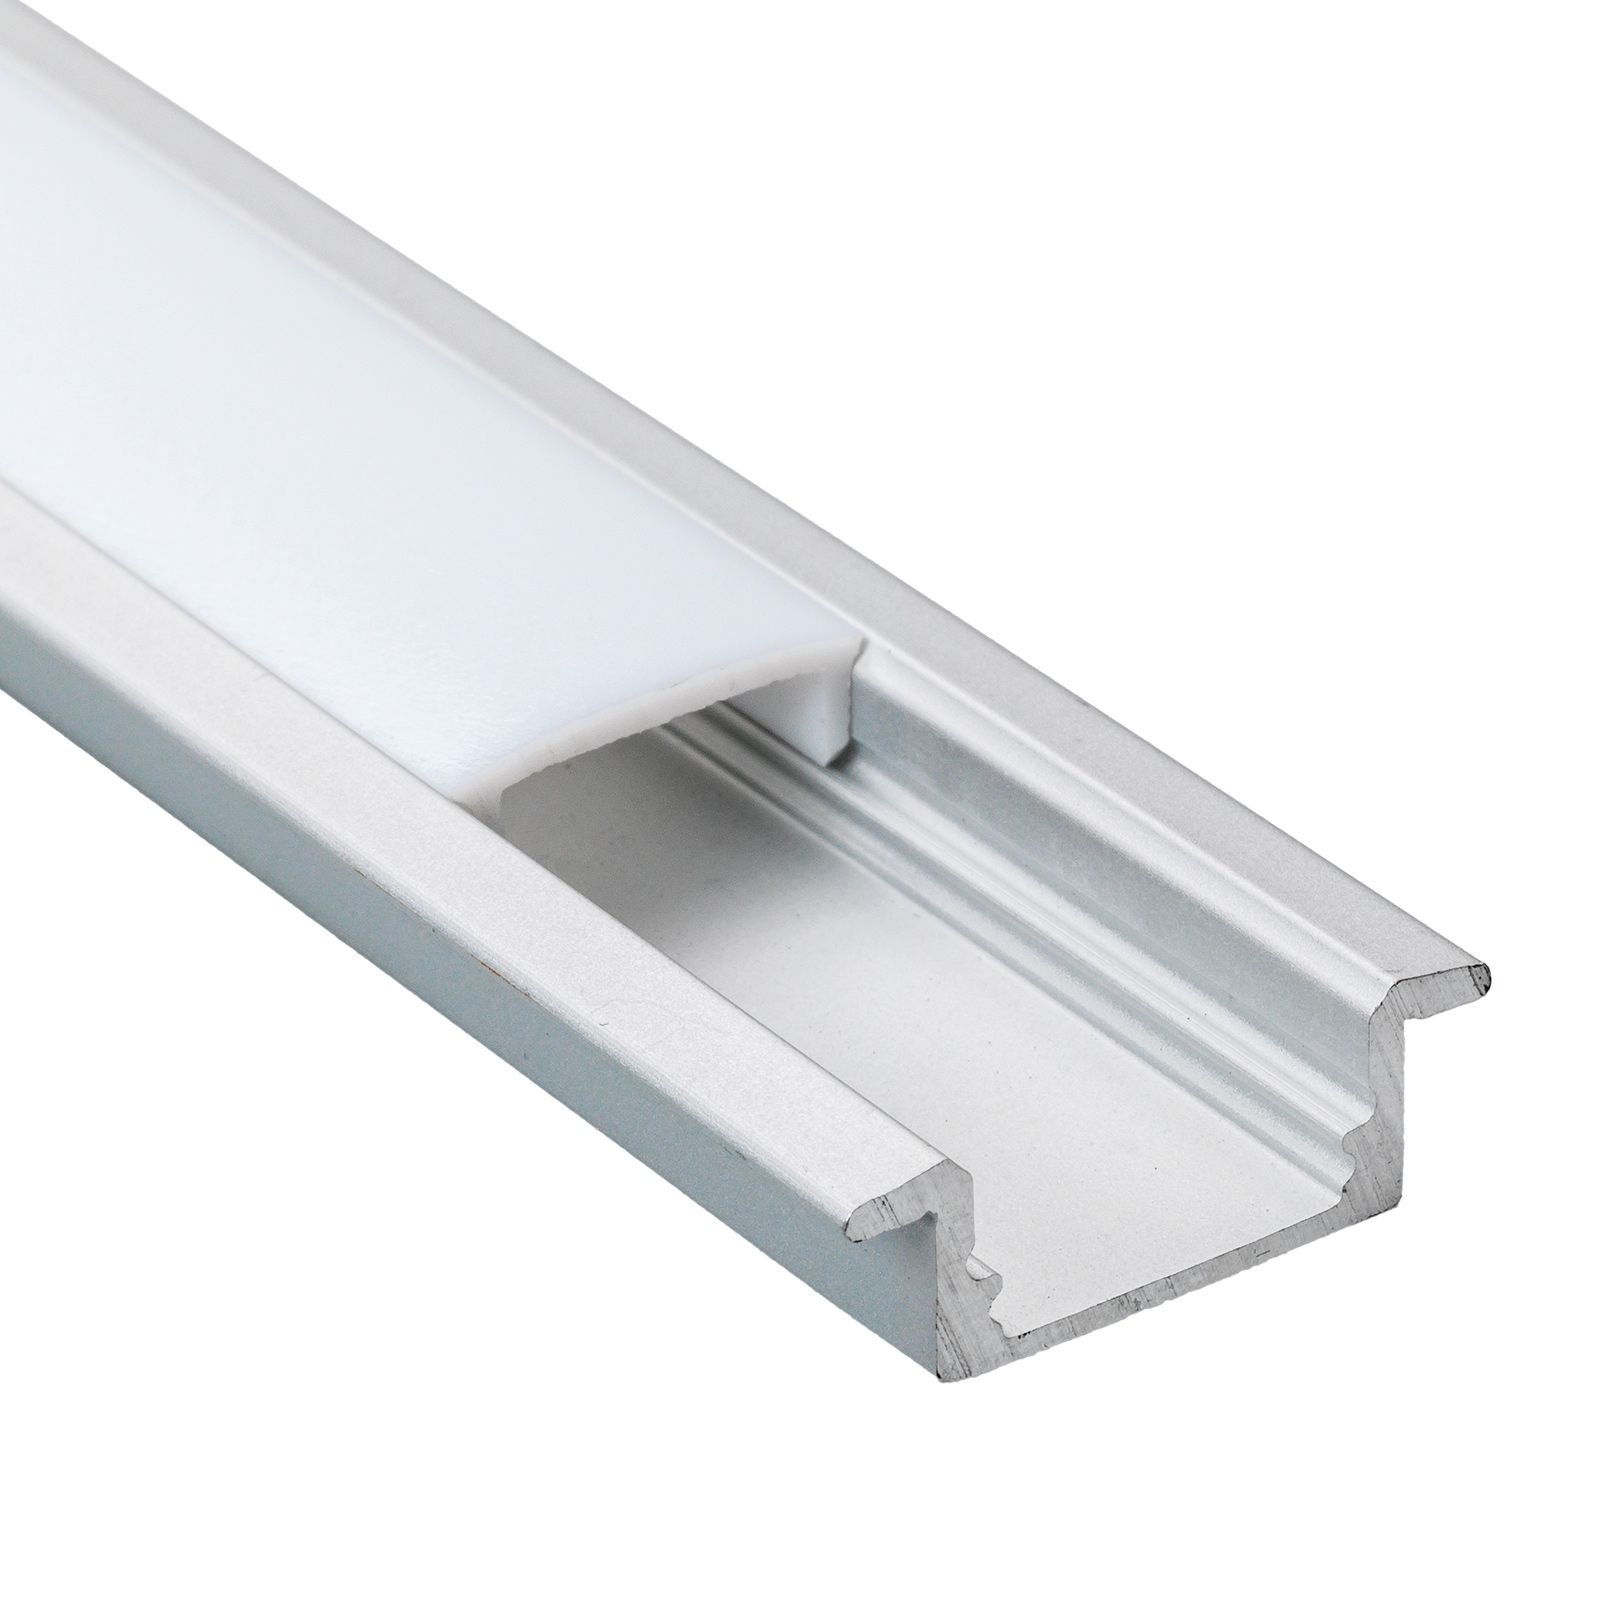 Alu Profil für LED DEEP Milchglas Streifen Lichtleiste Aluminium 2m DEEP  Milchglas, Leisten \ Alu Profile Für LED Streifen \ Alu Profile